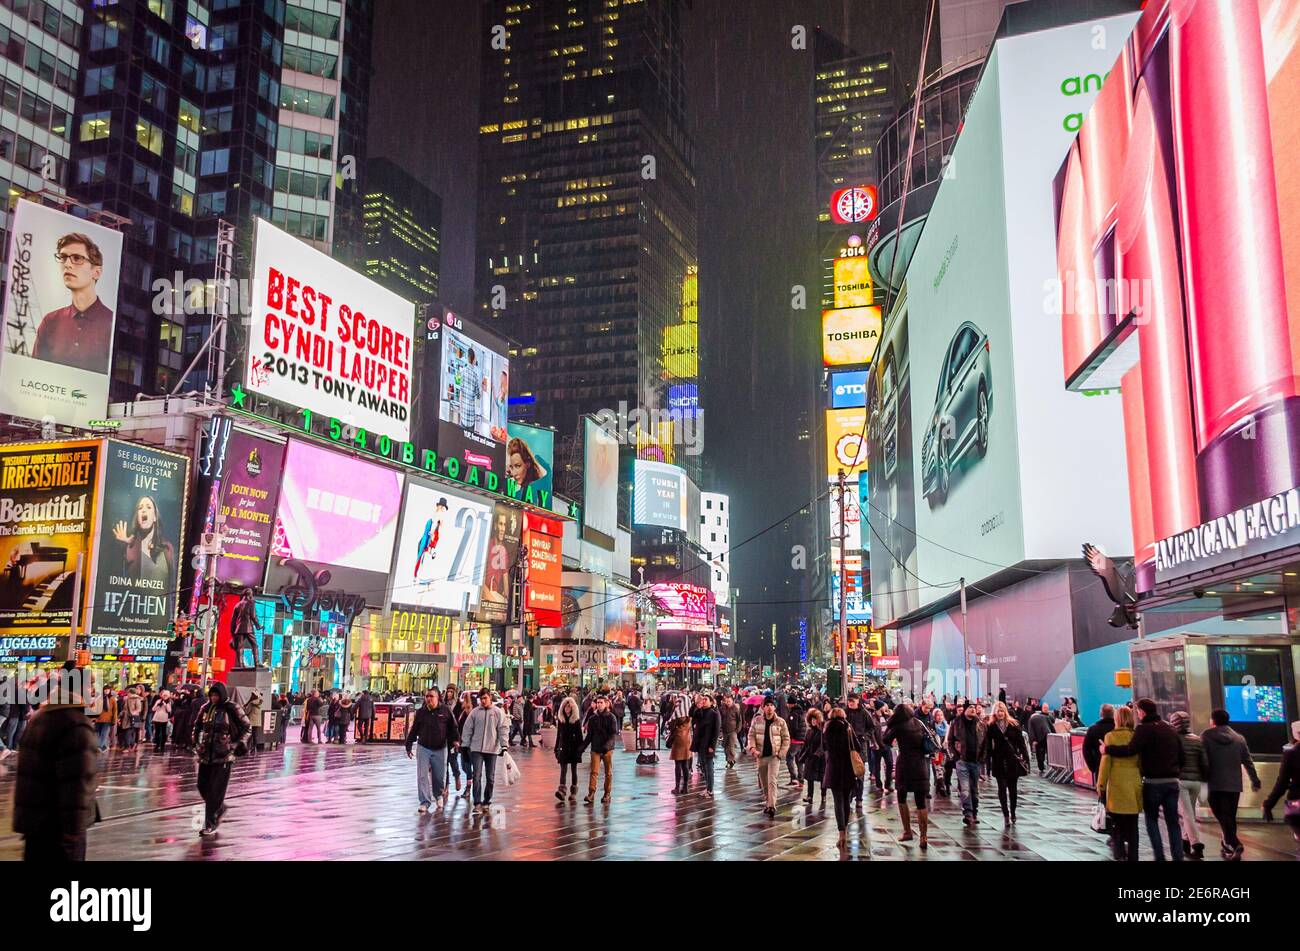 Überfüllter Times Square in Midtown Manhattan bei Nacht. Helle LED-Bildschirme und Plakatwände. Stadtfotografie. Manhattan, New York City, USA Stockfoto